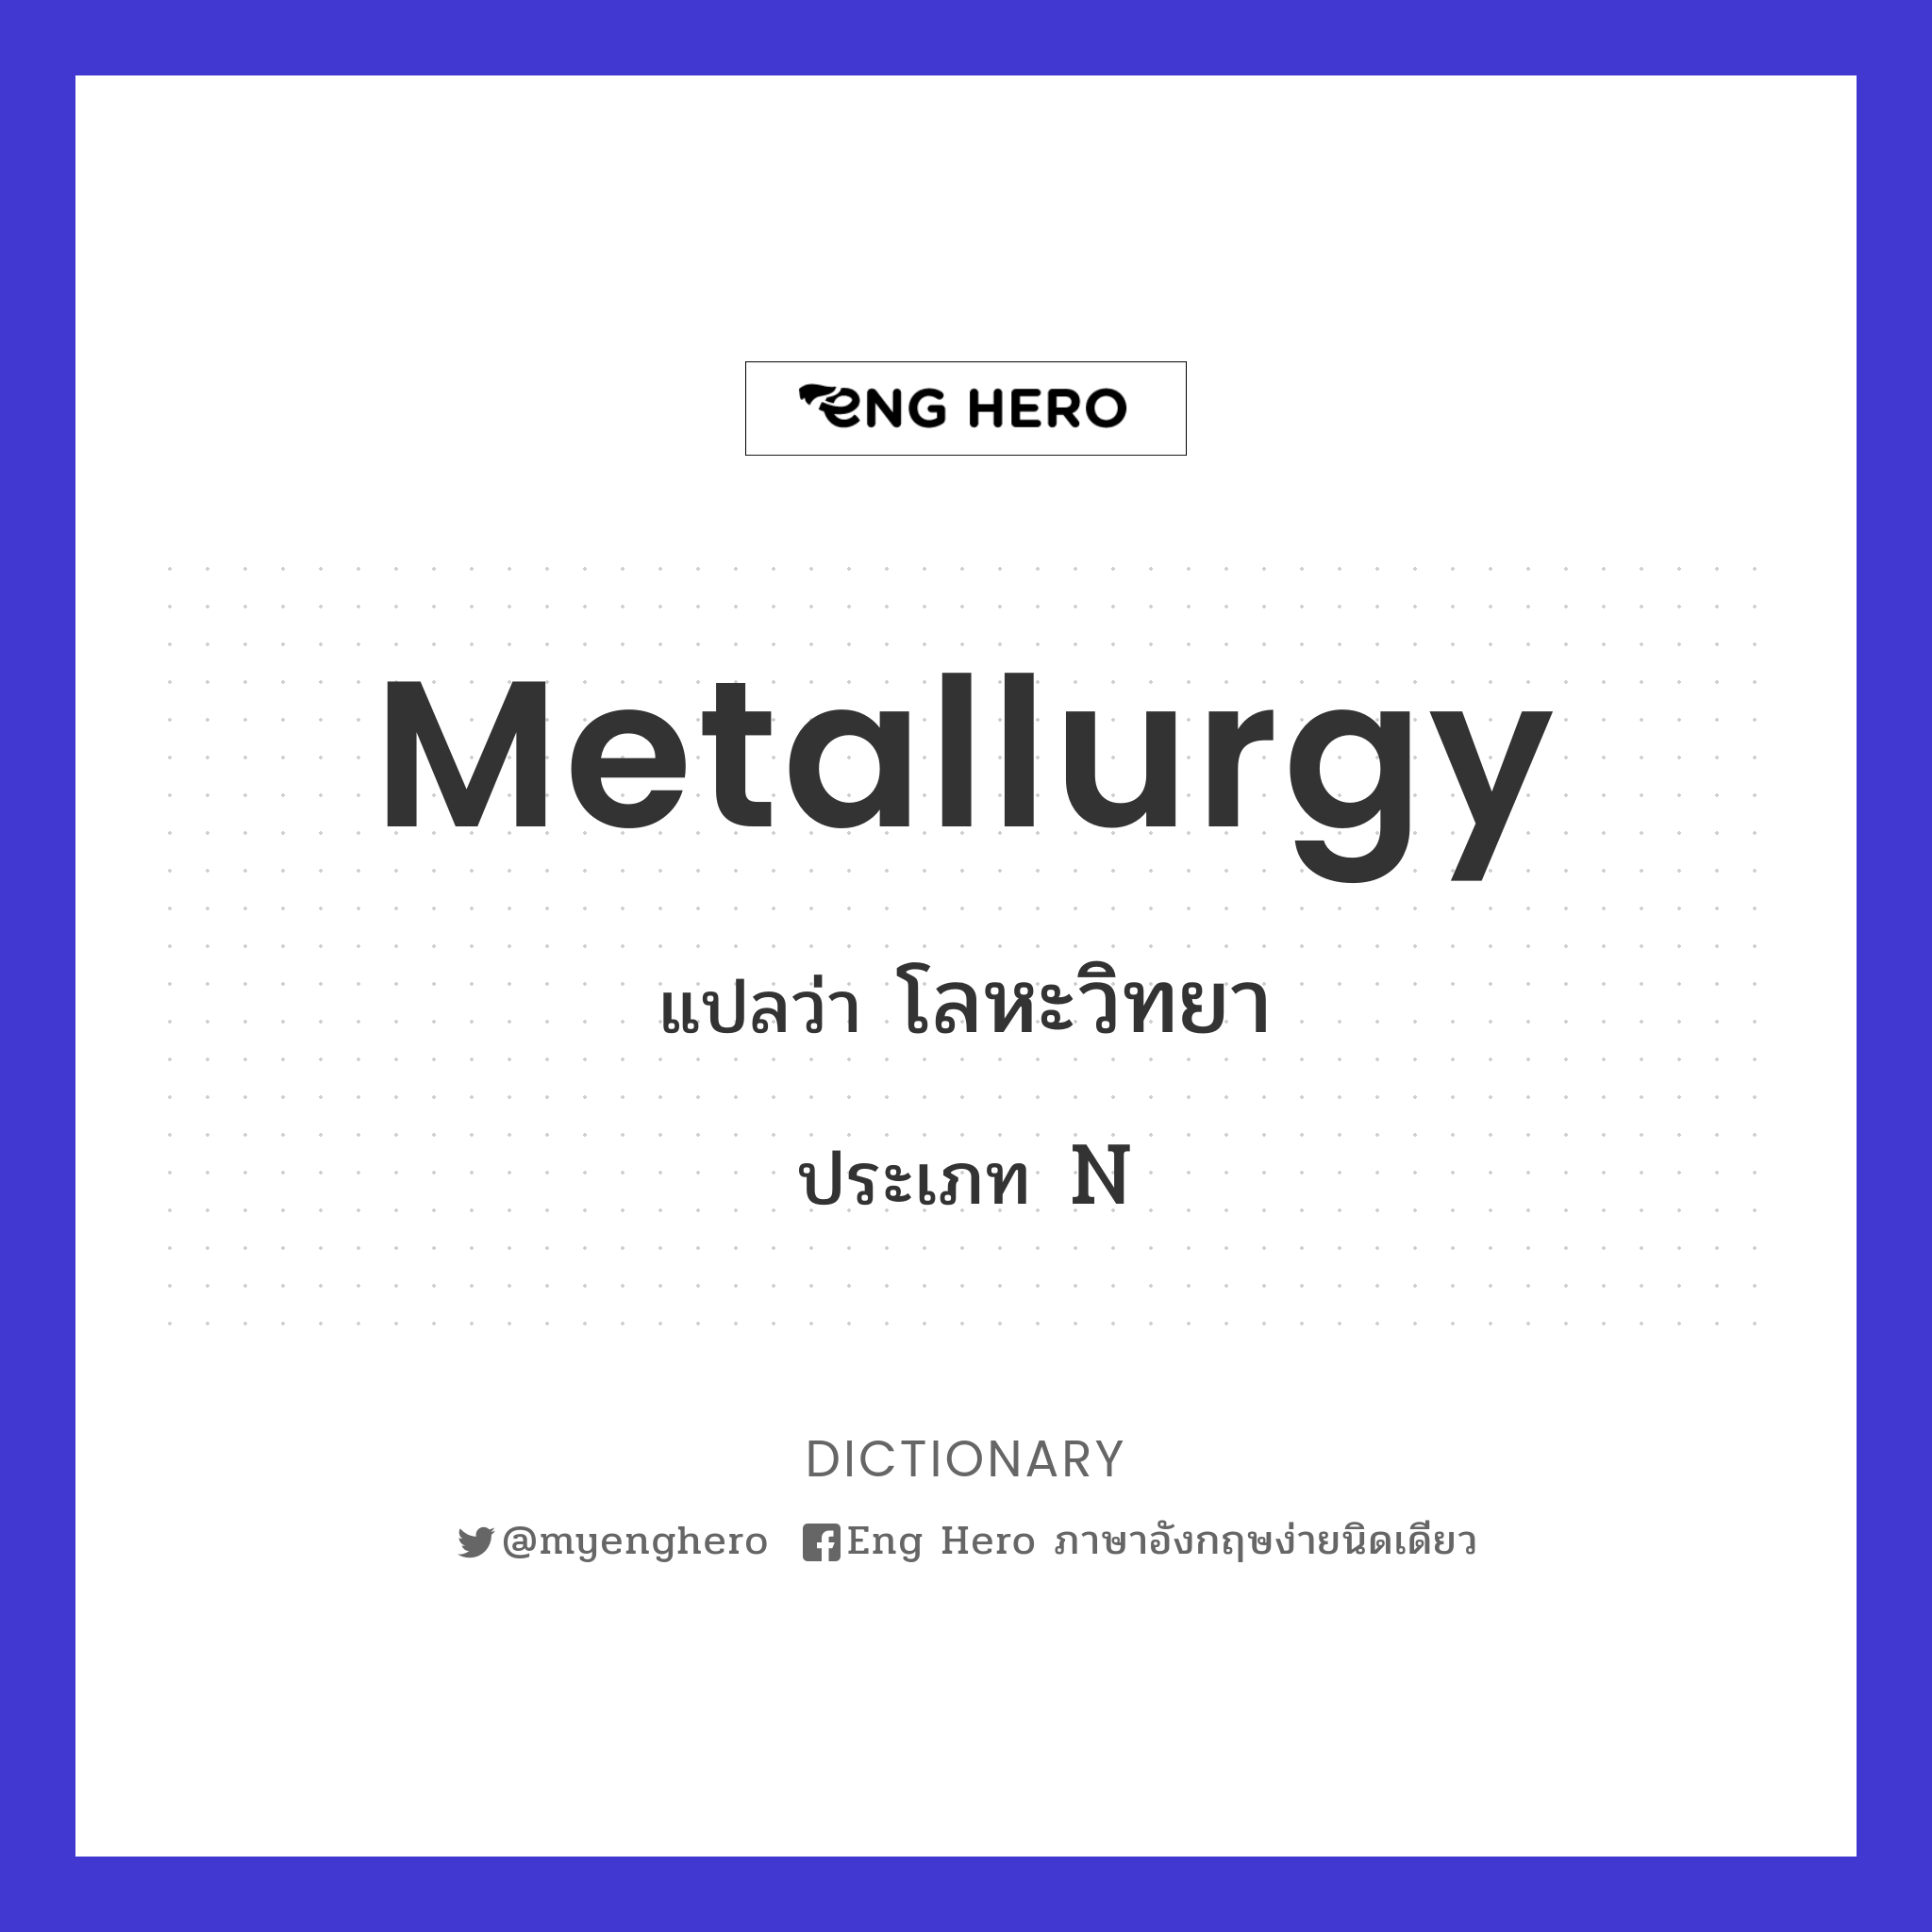 metallurgy